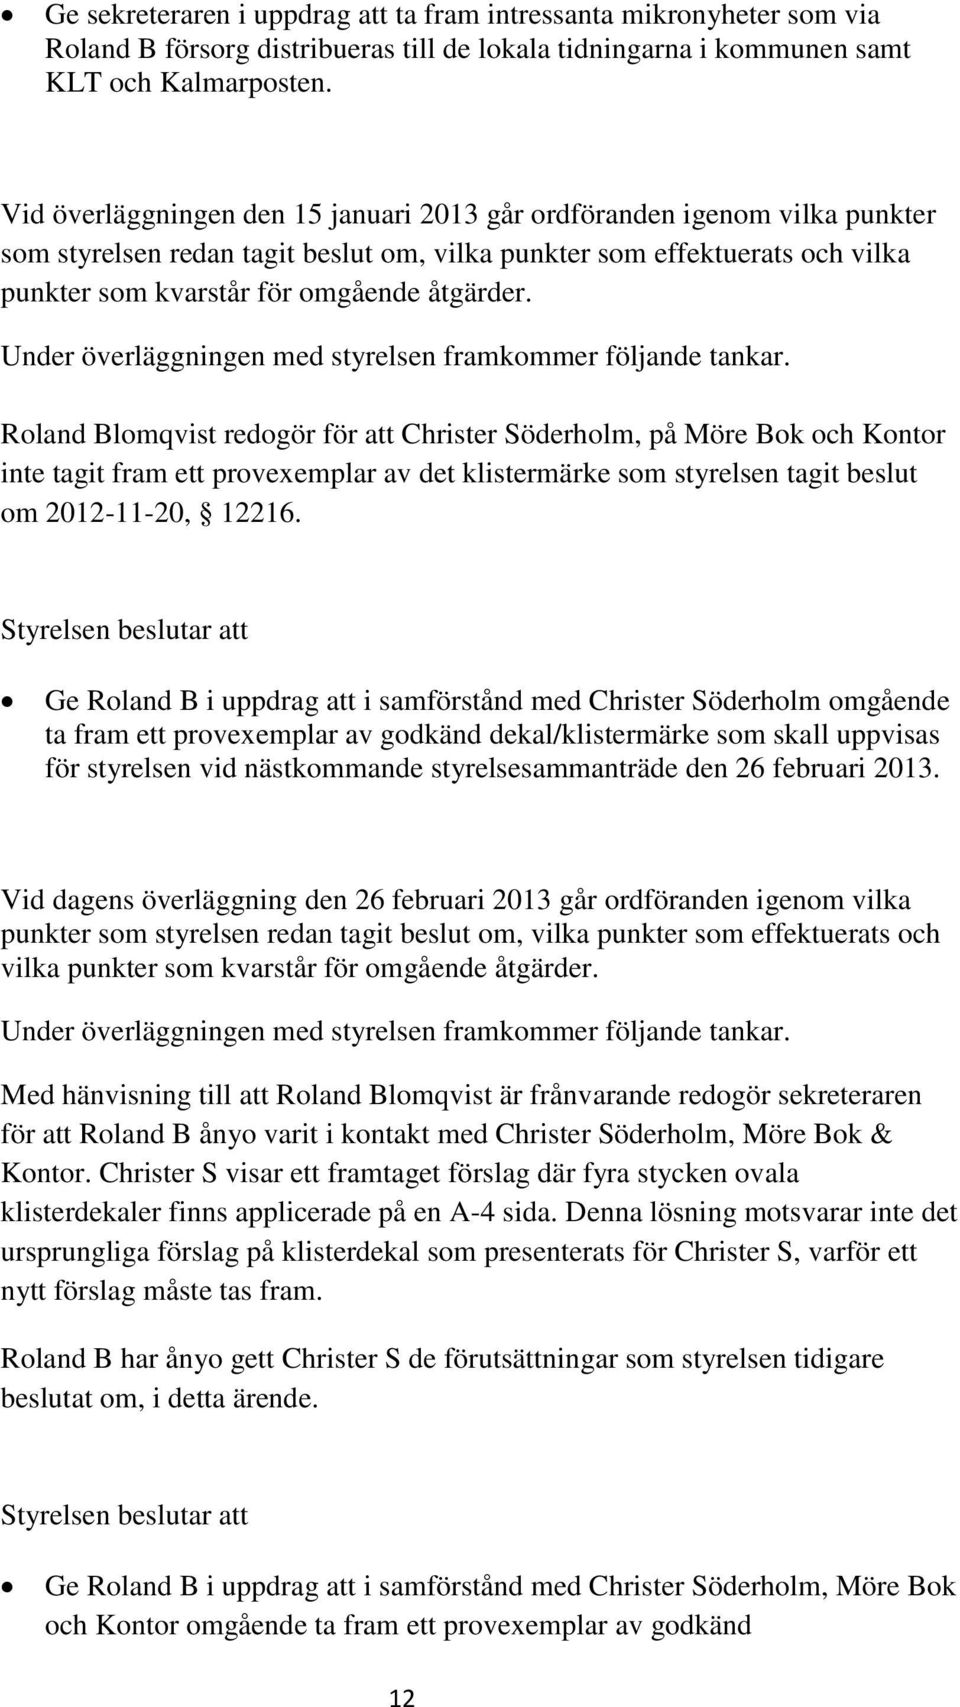 Roland Blomqvist redogör för att Christer Söderholm, på Möre Bok och Kontor inte tagit fram ett provexemplar av det klistermärke som styrelsen tagit beslut om 2012-11-20, 12216.